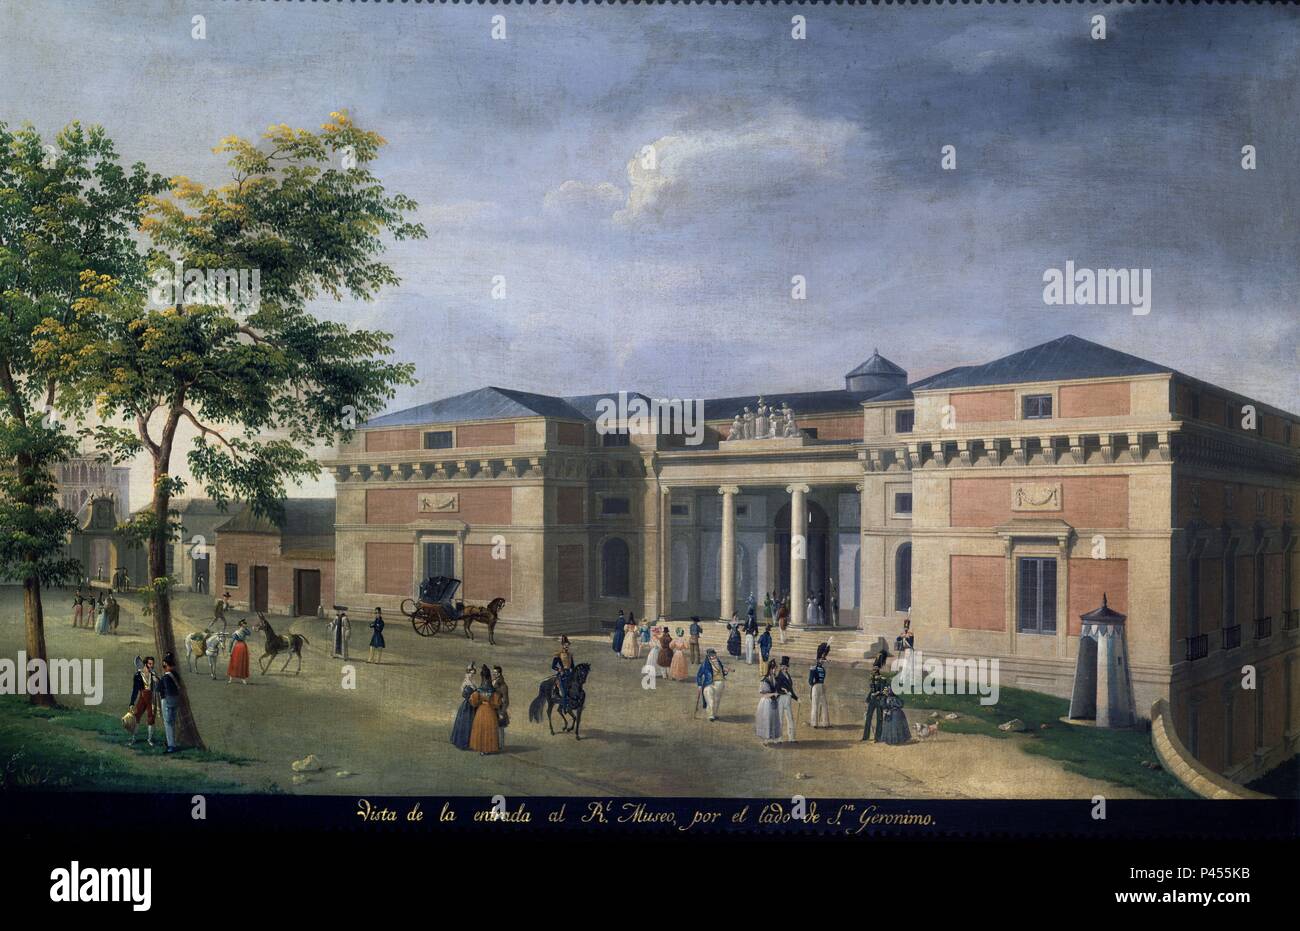 EL MUSEO DEL PRADO VISTO DESDE EL LADO DE SAN JERONIMO - SIGLO XVIII. Author: Fernando Brambila (1763-1832). Location: MINISTERIO DE HACIENDA-COLECCION, SPAIN. Stock Photo